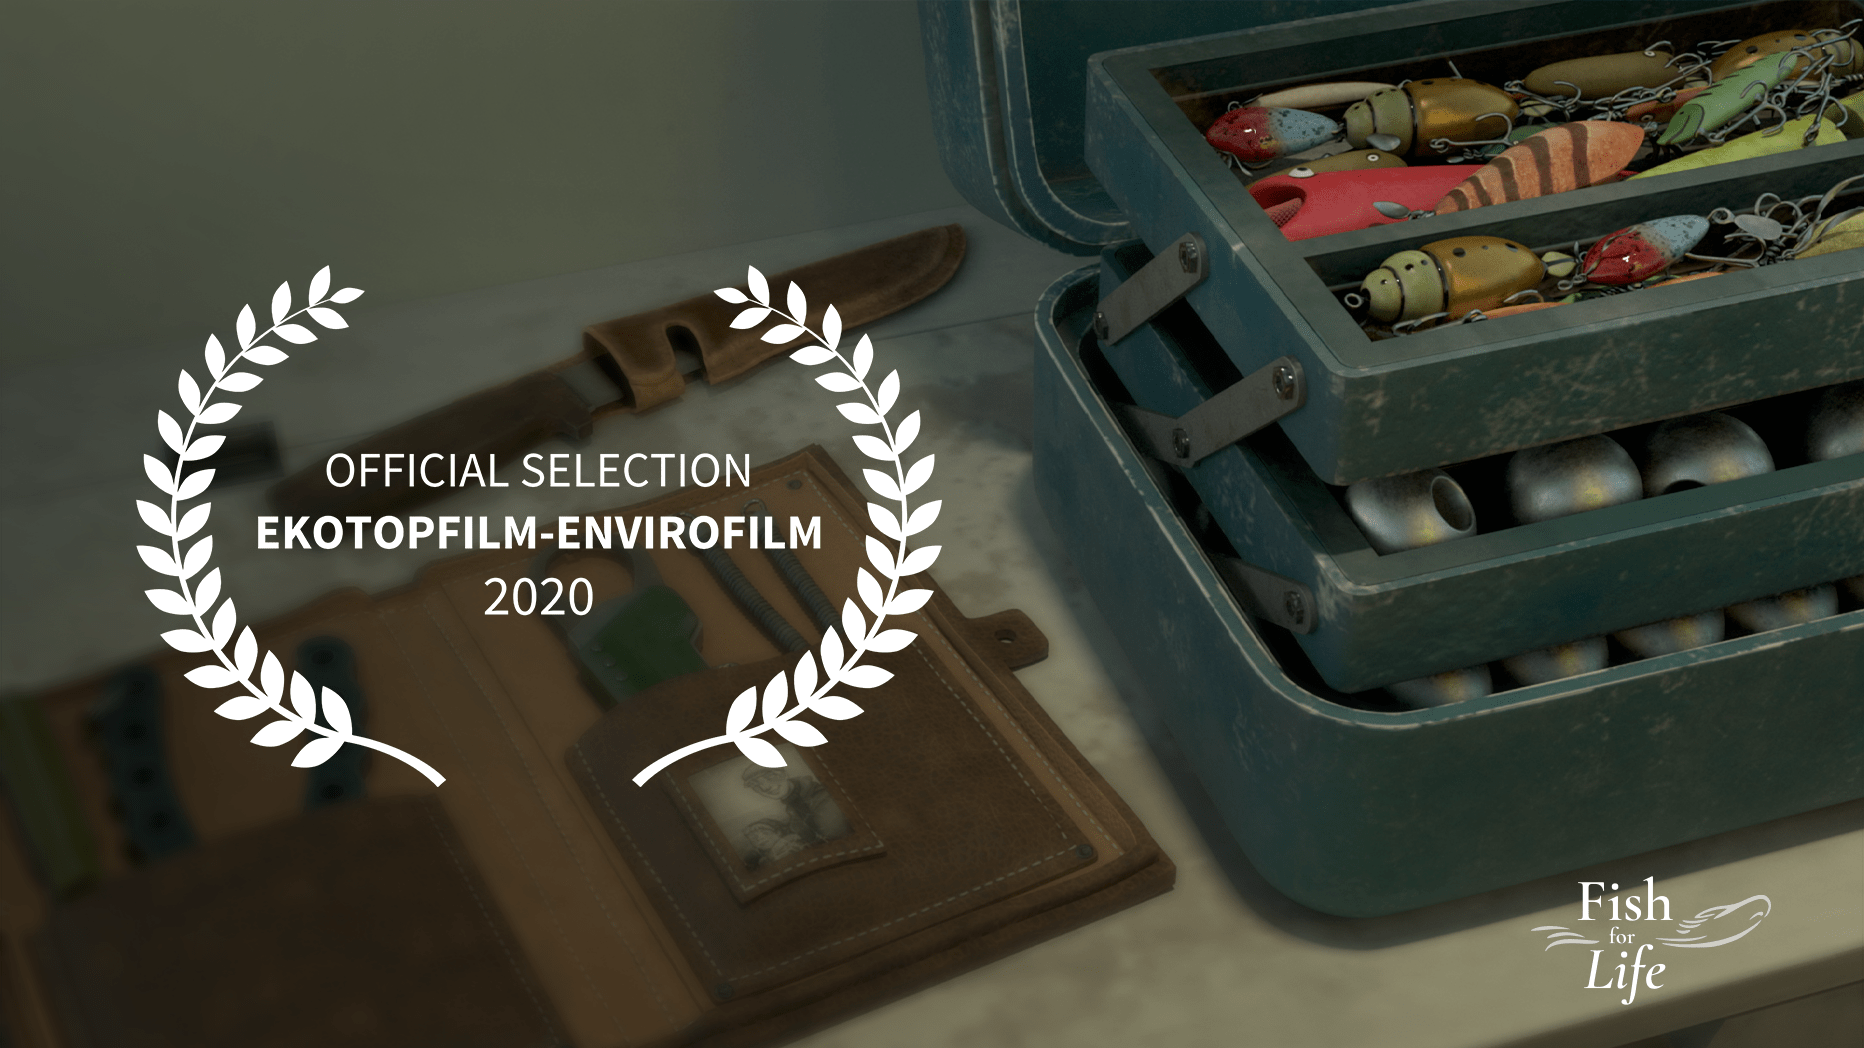 Fish for Life – Ekotopfilm-Envirofilm festival